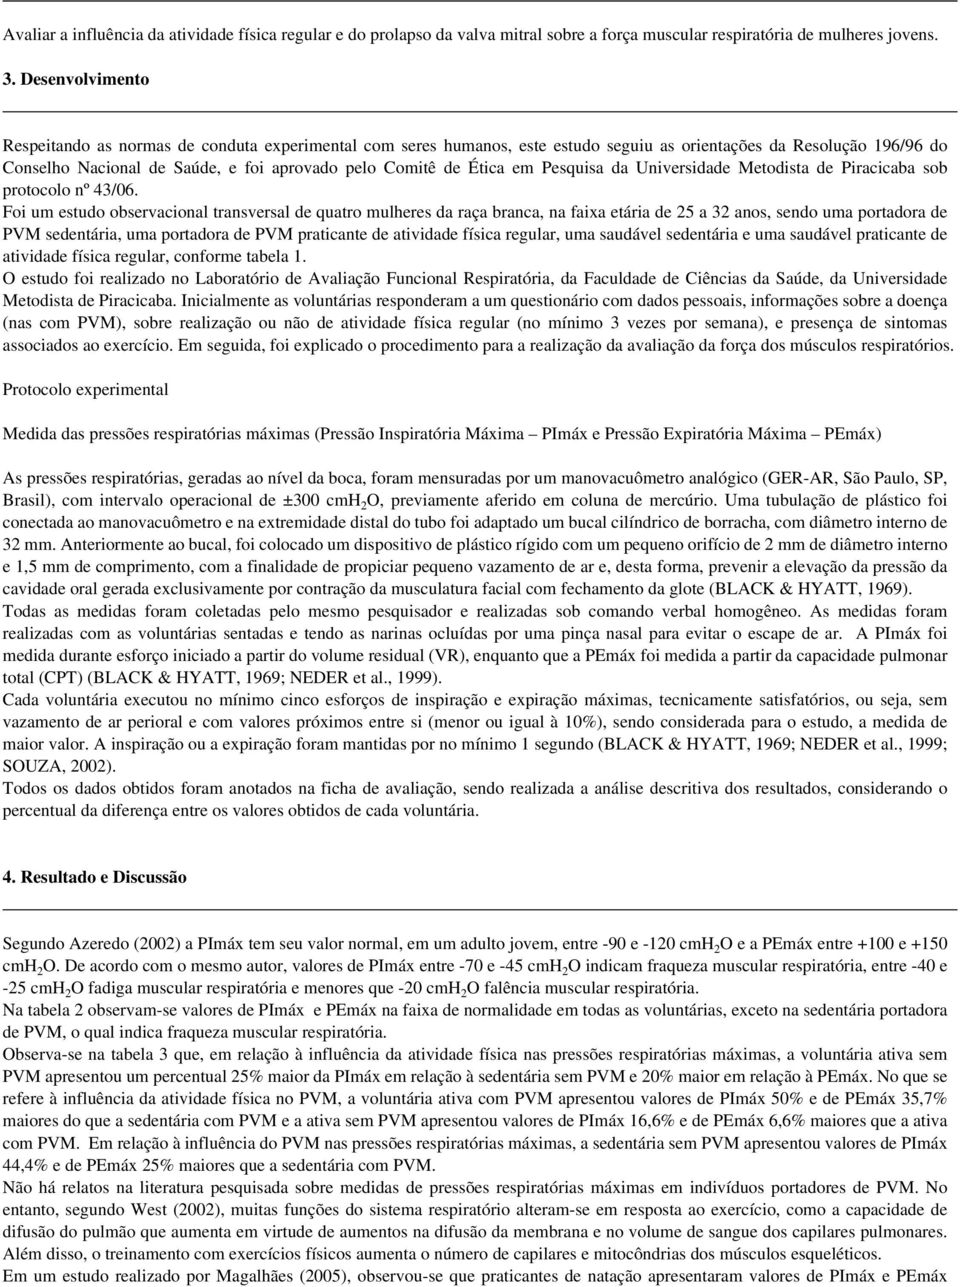 Ética em Pesquisa da Universidade Metodista de Piracicaba sob protocolo nº 43/06.